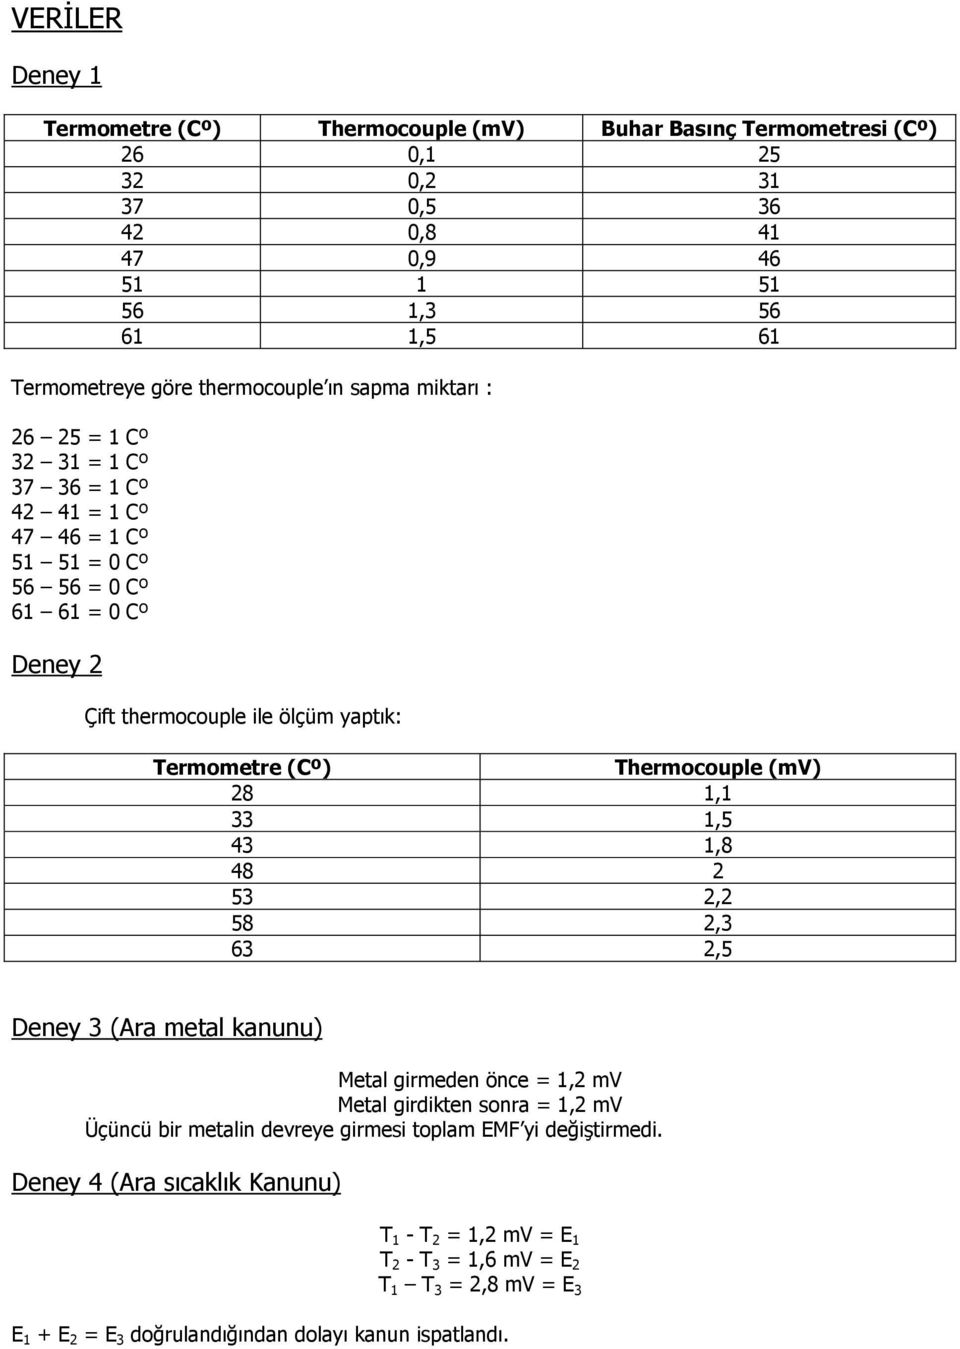 Termometre (Cº) Thermocouple (mv) 28 1,1 33 1,5 43 1,8 48 2 53 2,2 58 2,3 63 2,5 Deney 3 (Ara metal kanunu) Metal girmeden önce = 1,2 mv Metal girdikten sonra = 1,2 mv Üçüncü bir metalin